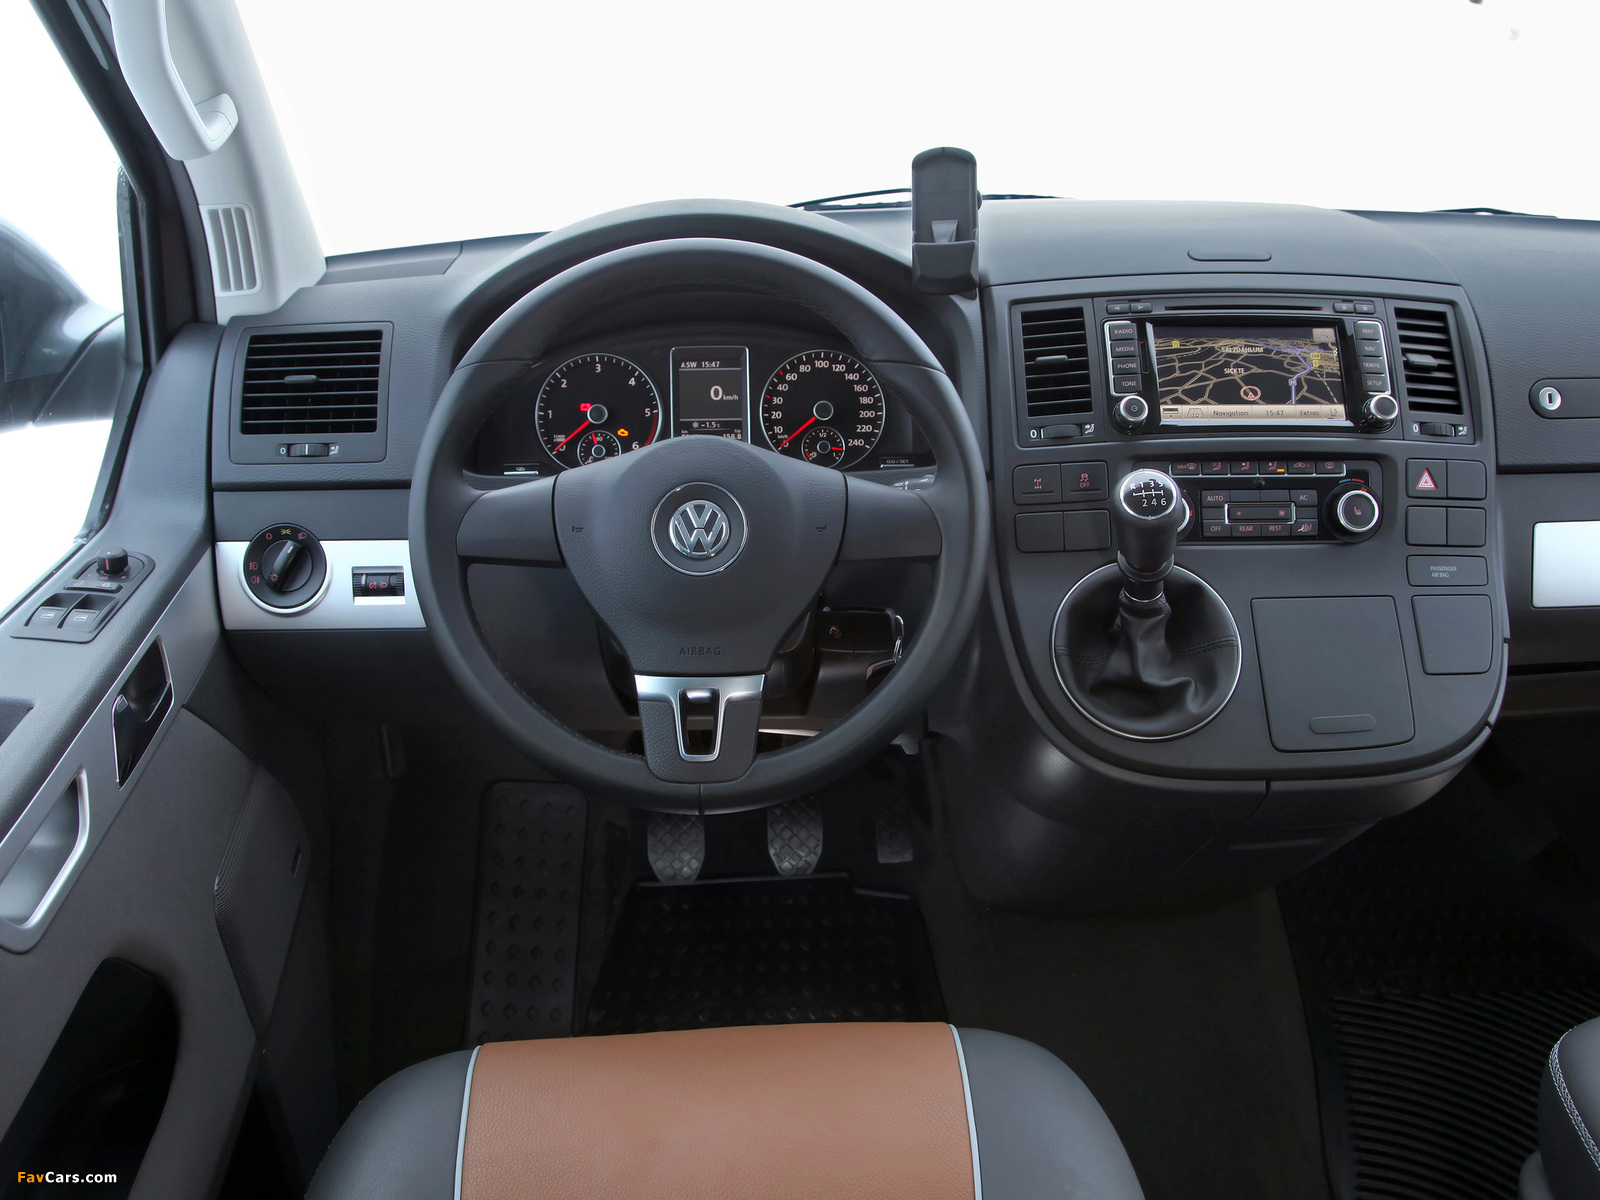 Volkswagen T5 Multivan Panamericana 2009 photos (1600 x 1200)